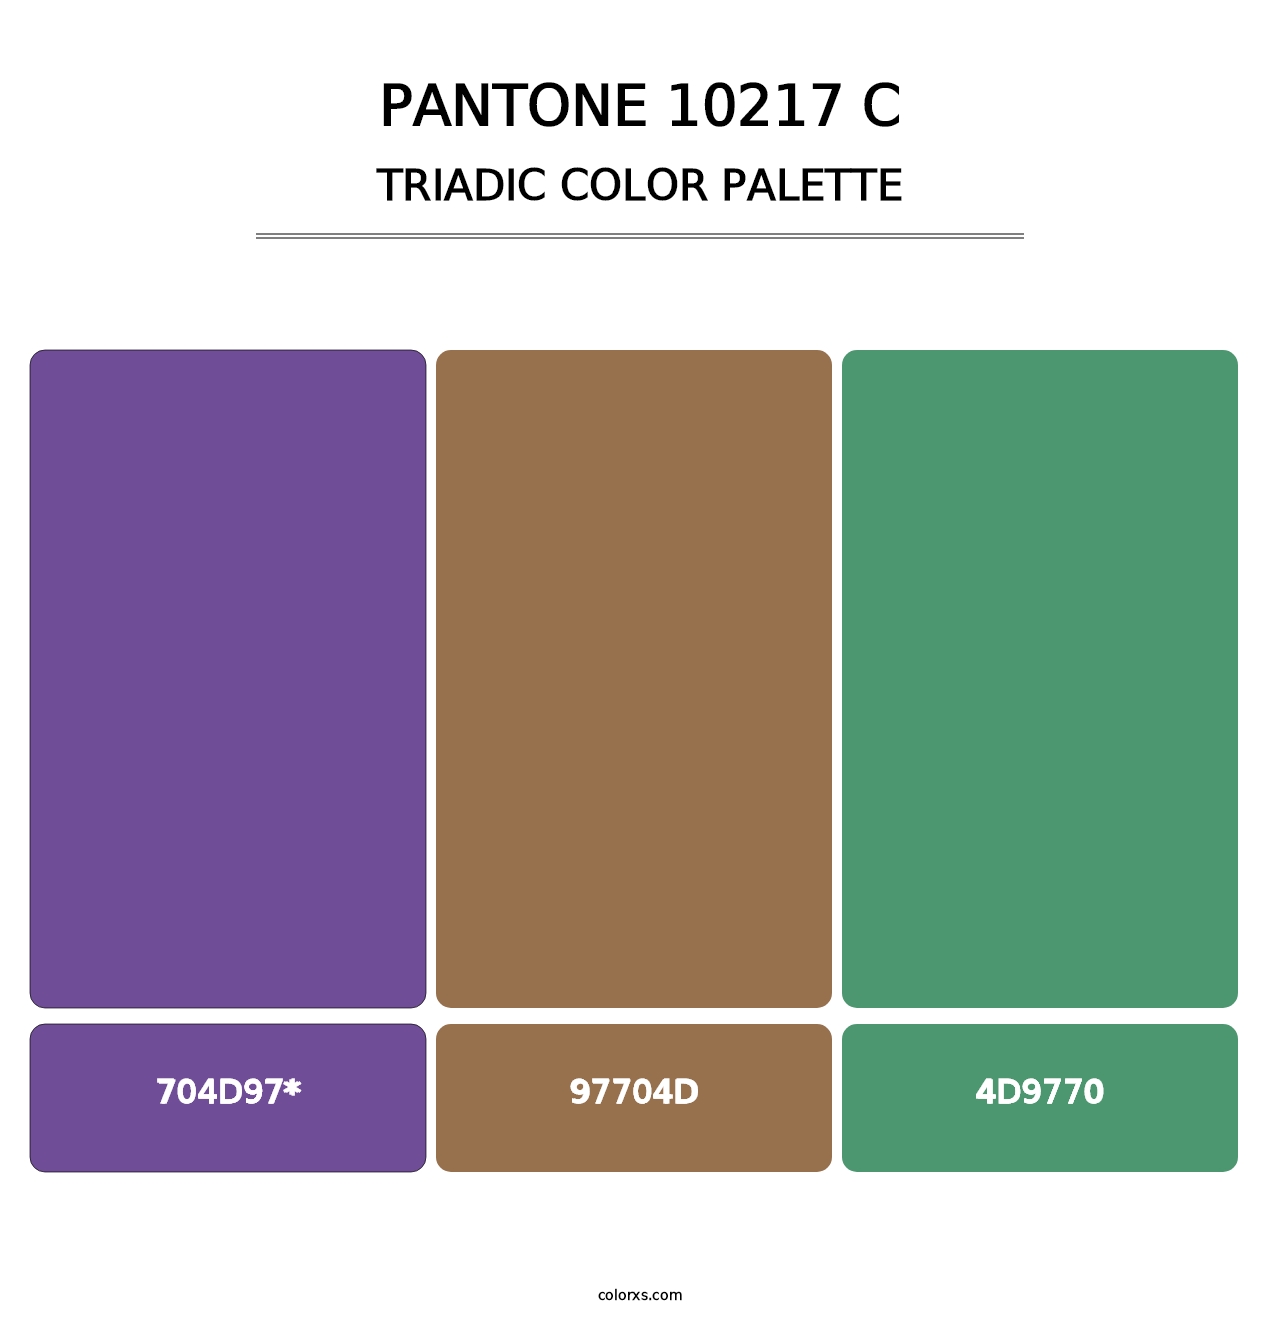 PANTONE 10217 C - Triadic Color Palette